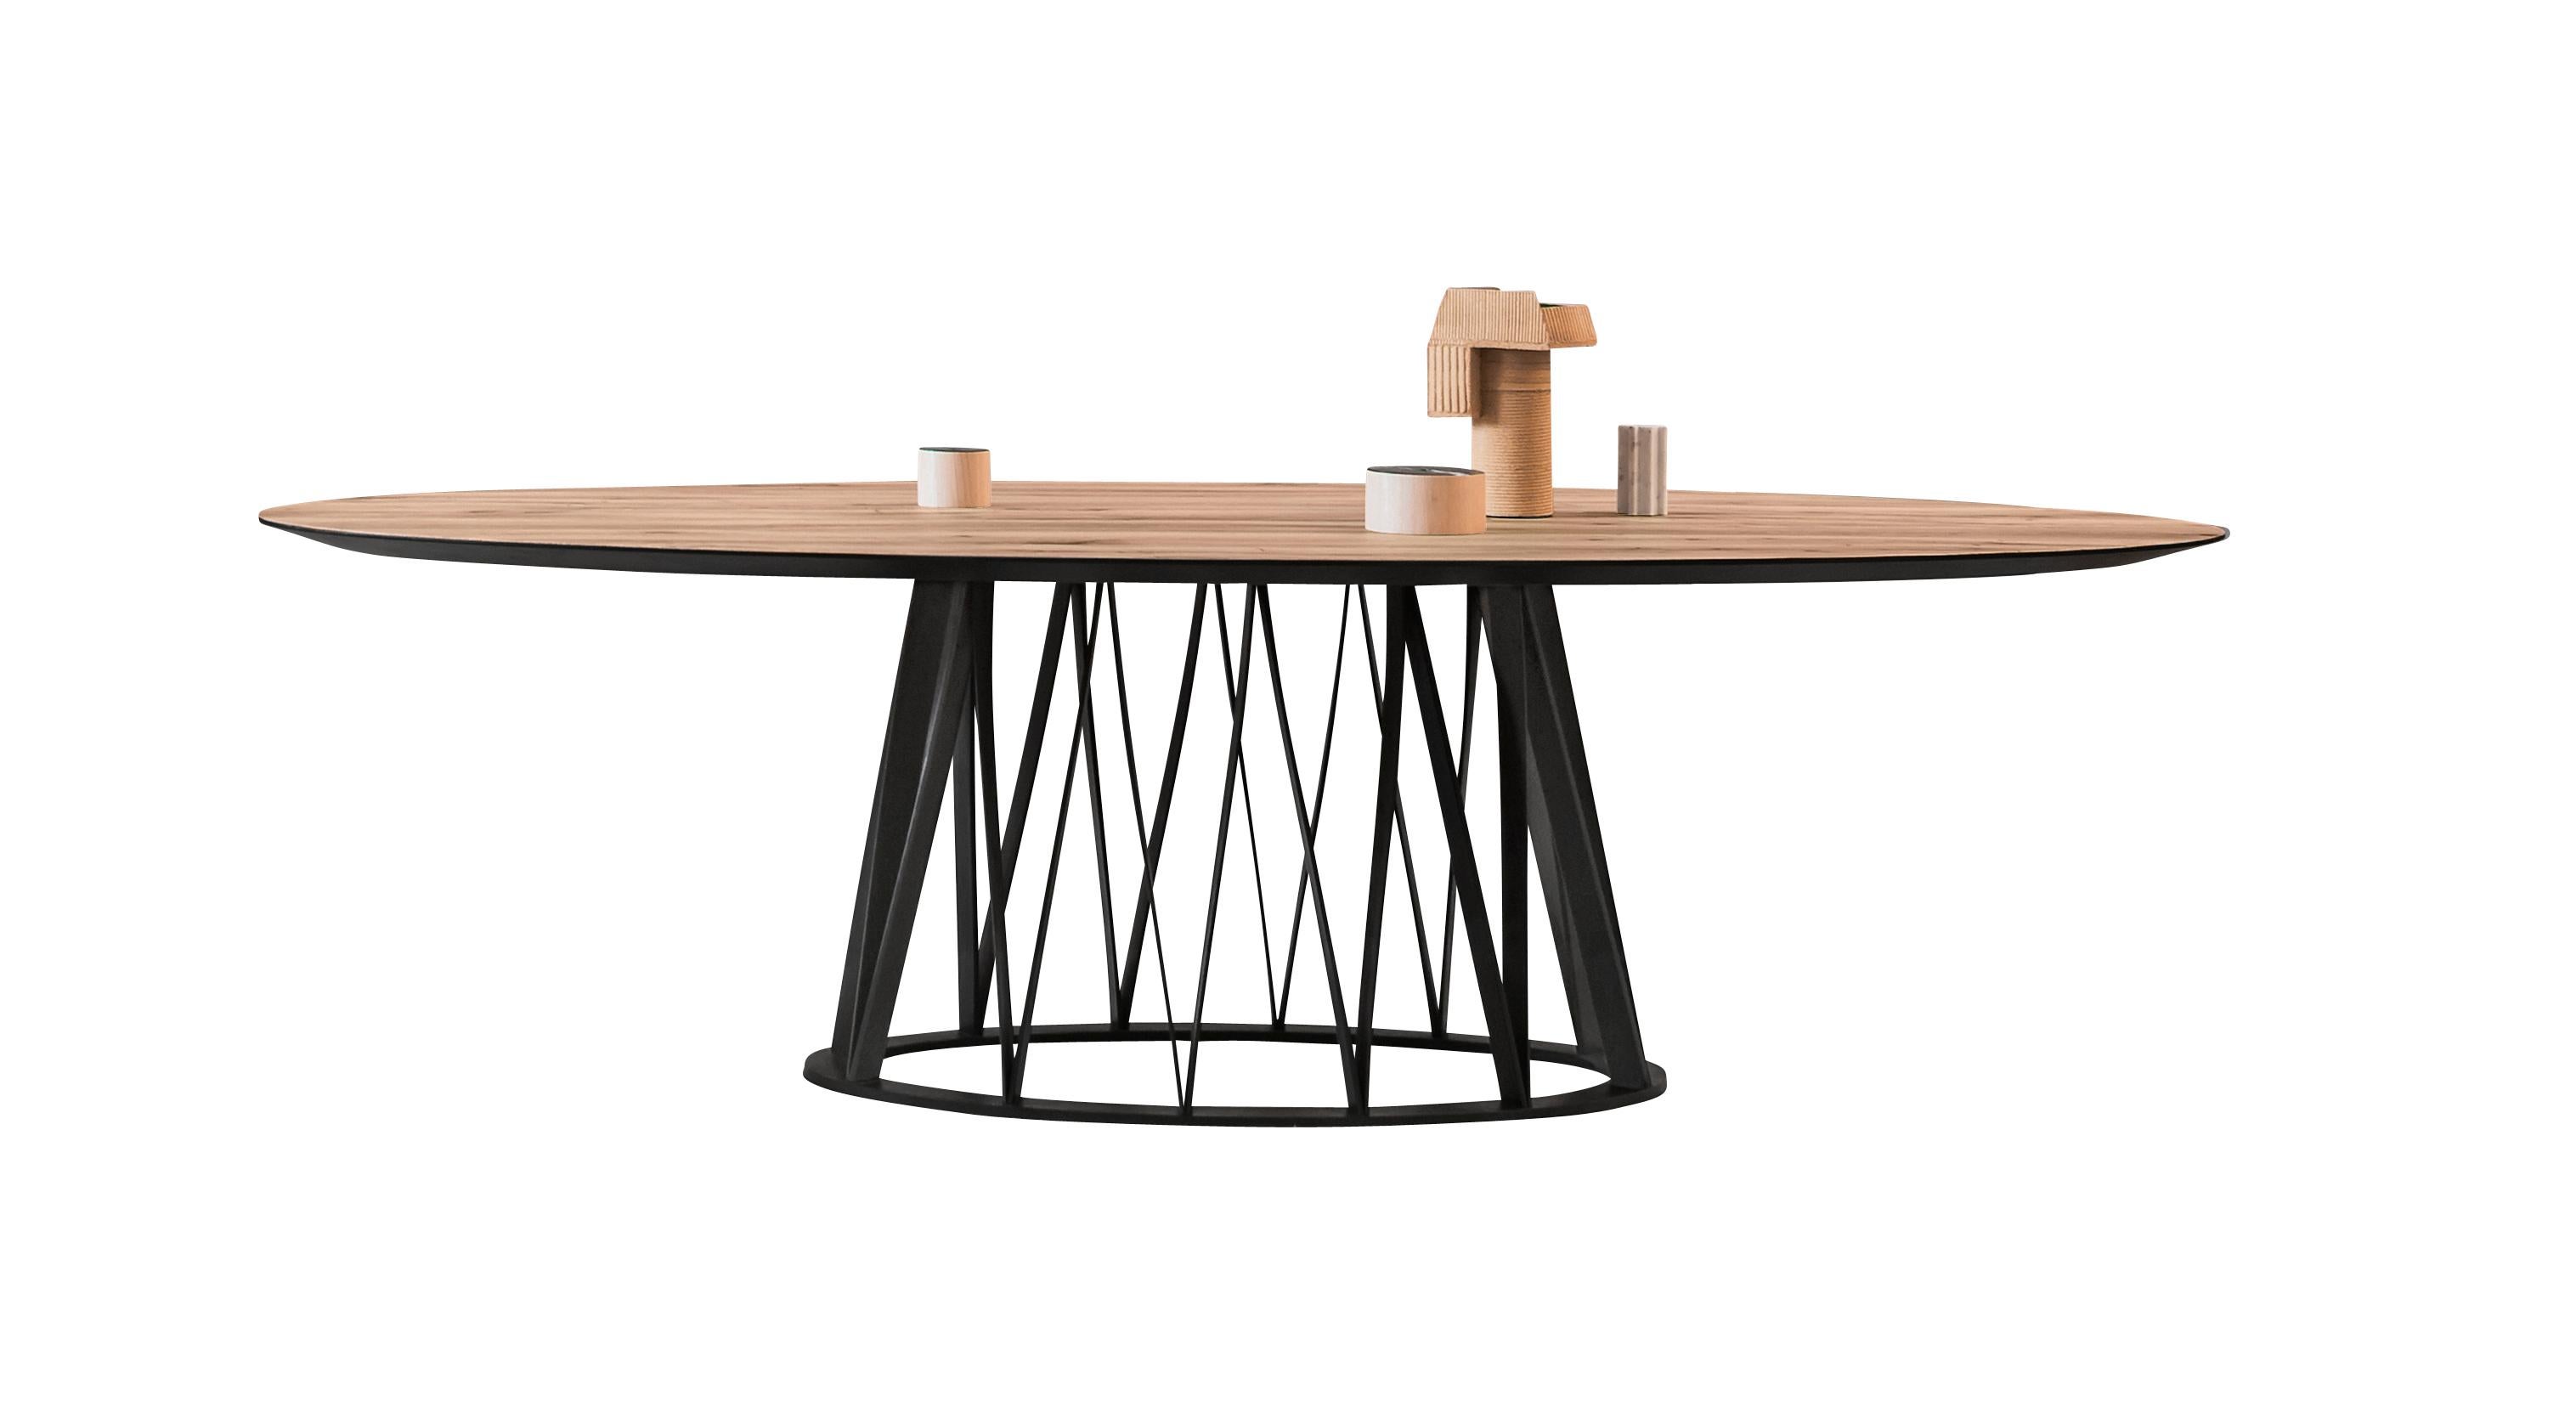 La table Acco est disponible avec un plateau en bois ou en céramique. La base en bois est proposée ici en frêne noir, mais elle est disponible sur commande en chêne naturel ou en noyer Canaletto. Vous voyez ici la grande table de salle à manger Acco